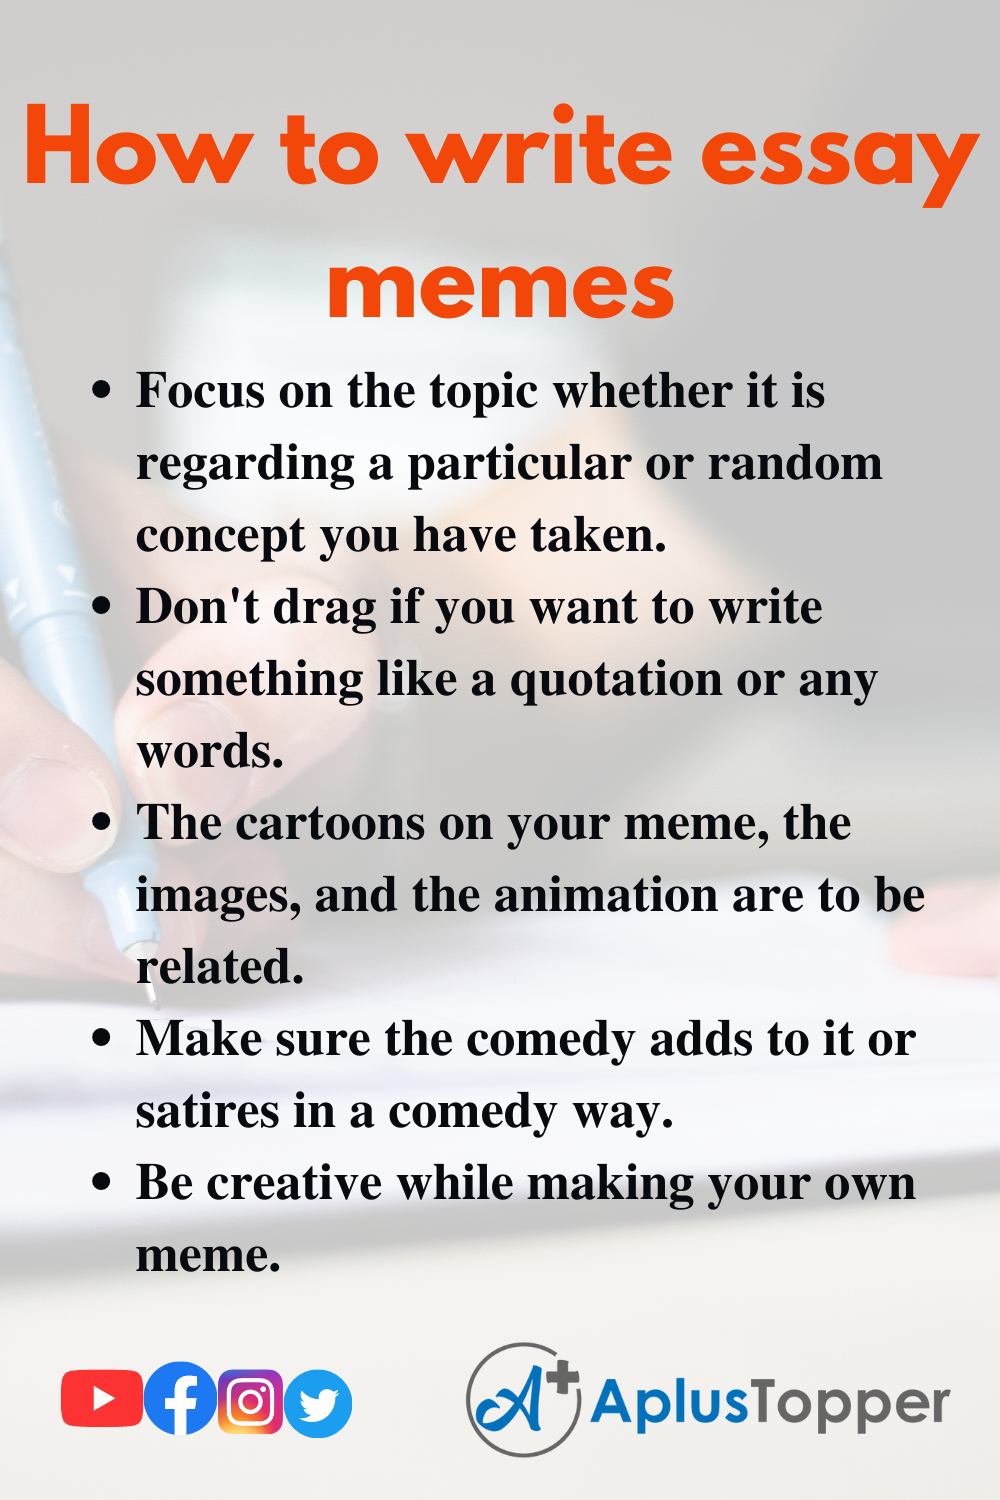 How to write essay memes